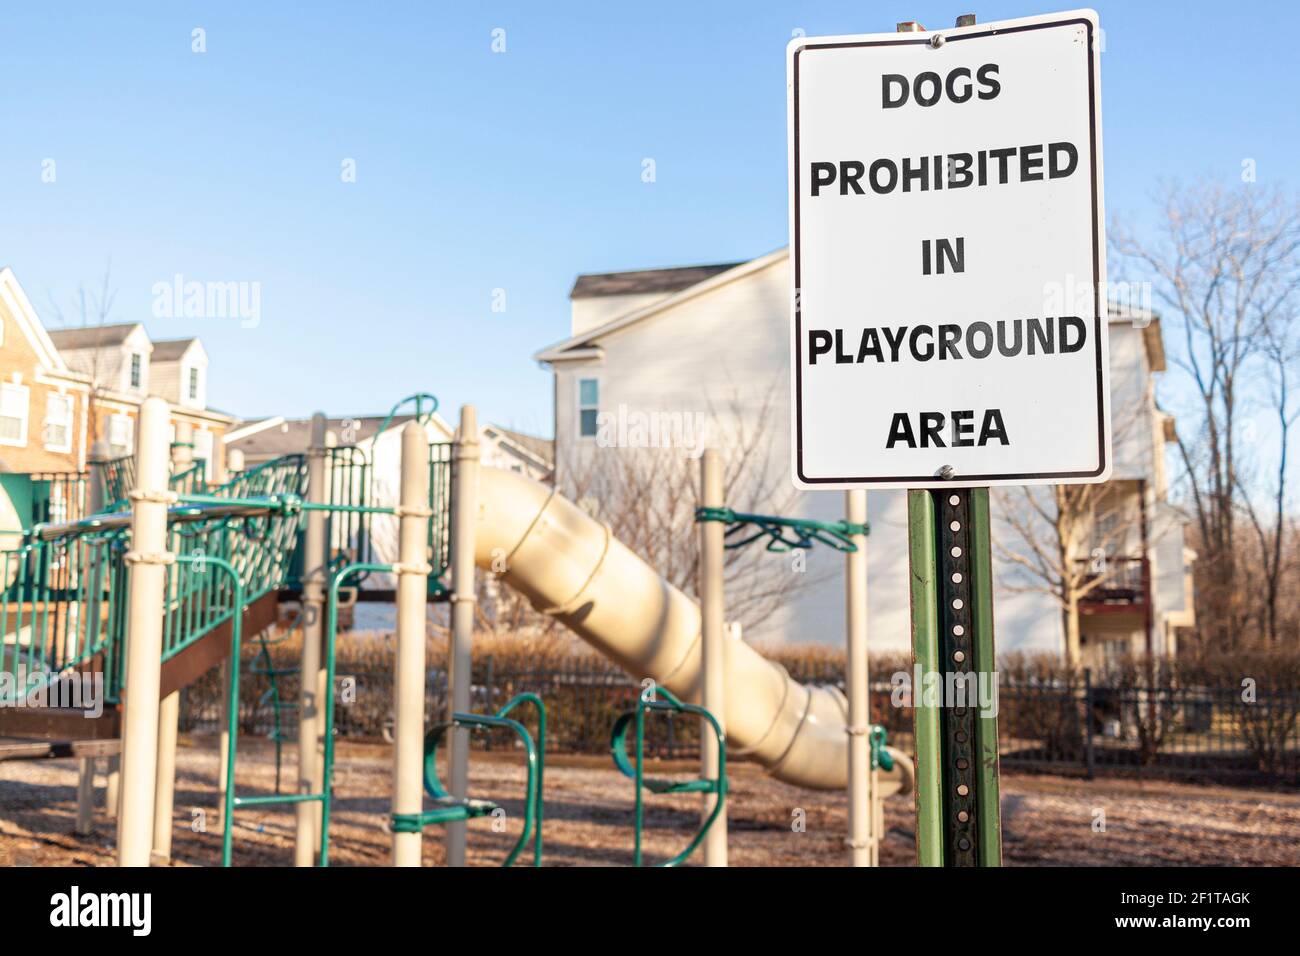 Hunde verboten im Spielplatz-Bereich Zeichen vor den Zäunen auf einem  eingezäunten Spielplatz eines Wohnvorstadtviertels. Haustiere können  Disturban verursachen Stockfotografie - Alamy